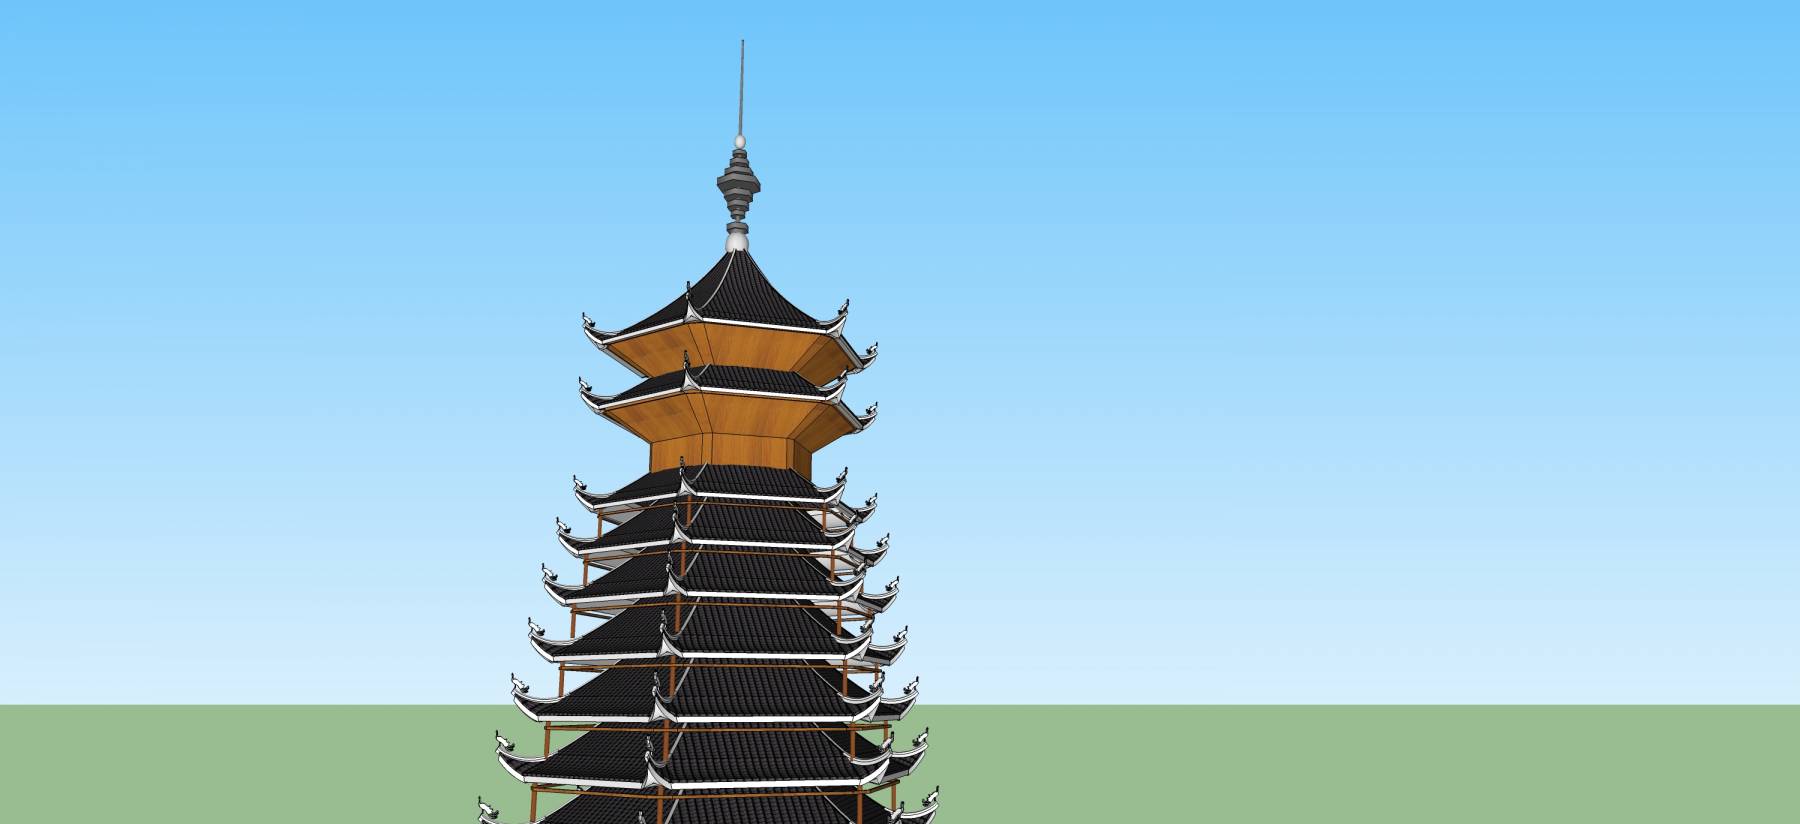 中式风格塔